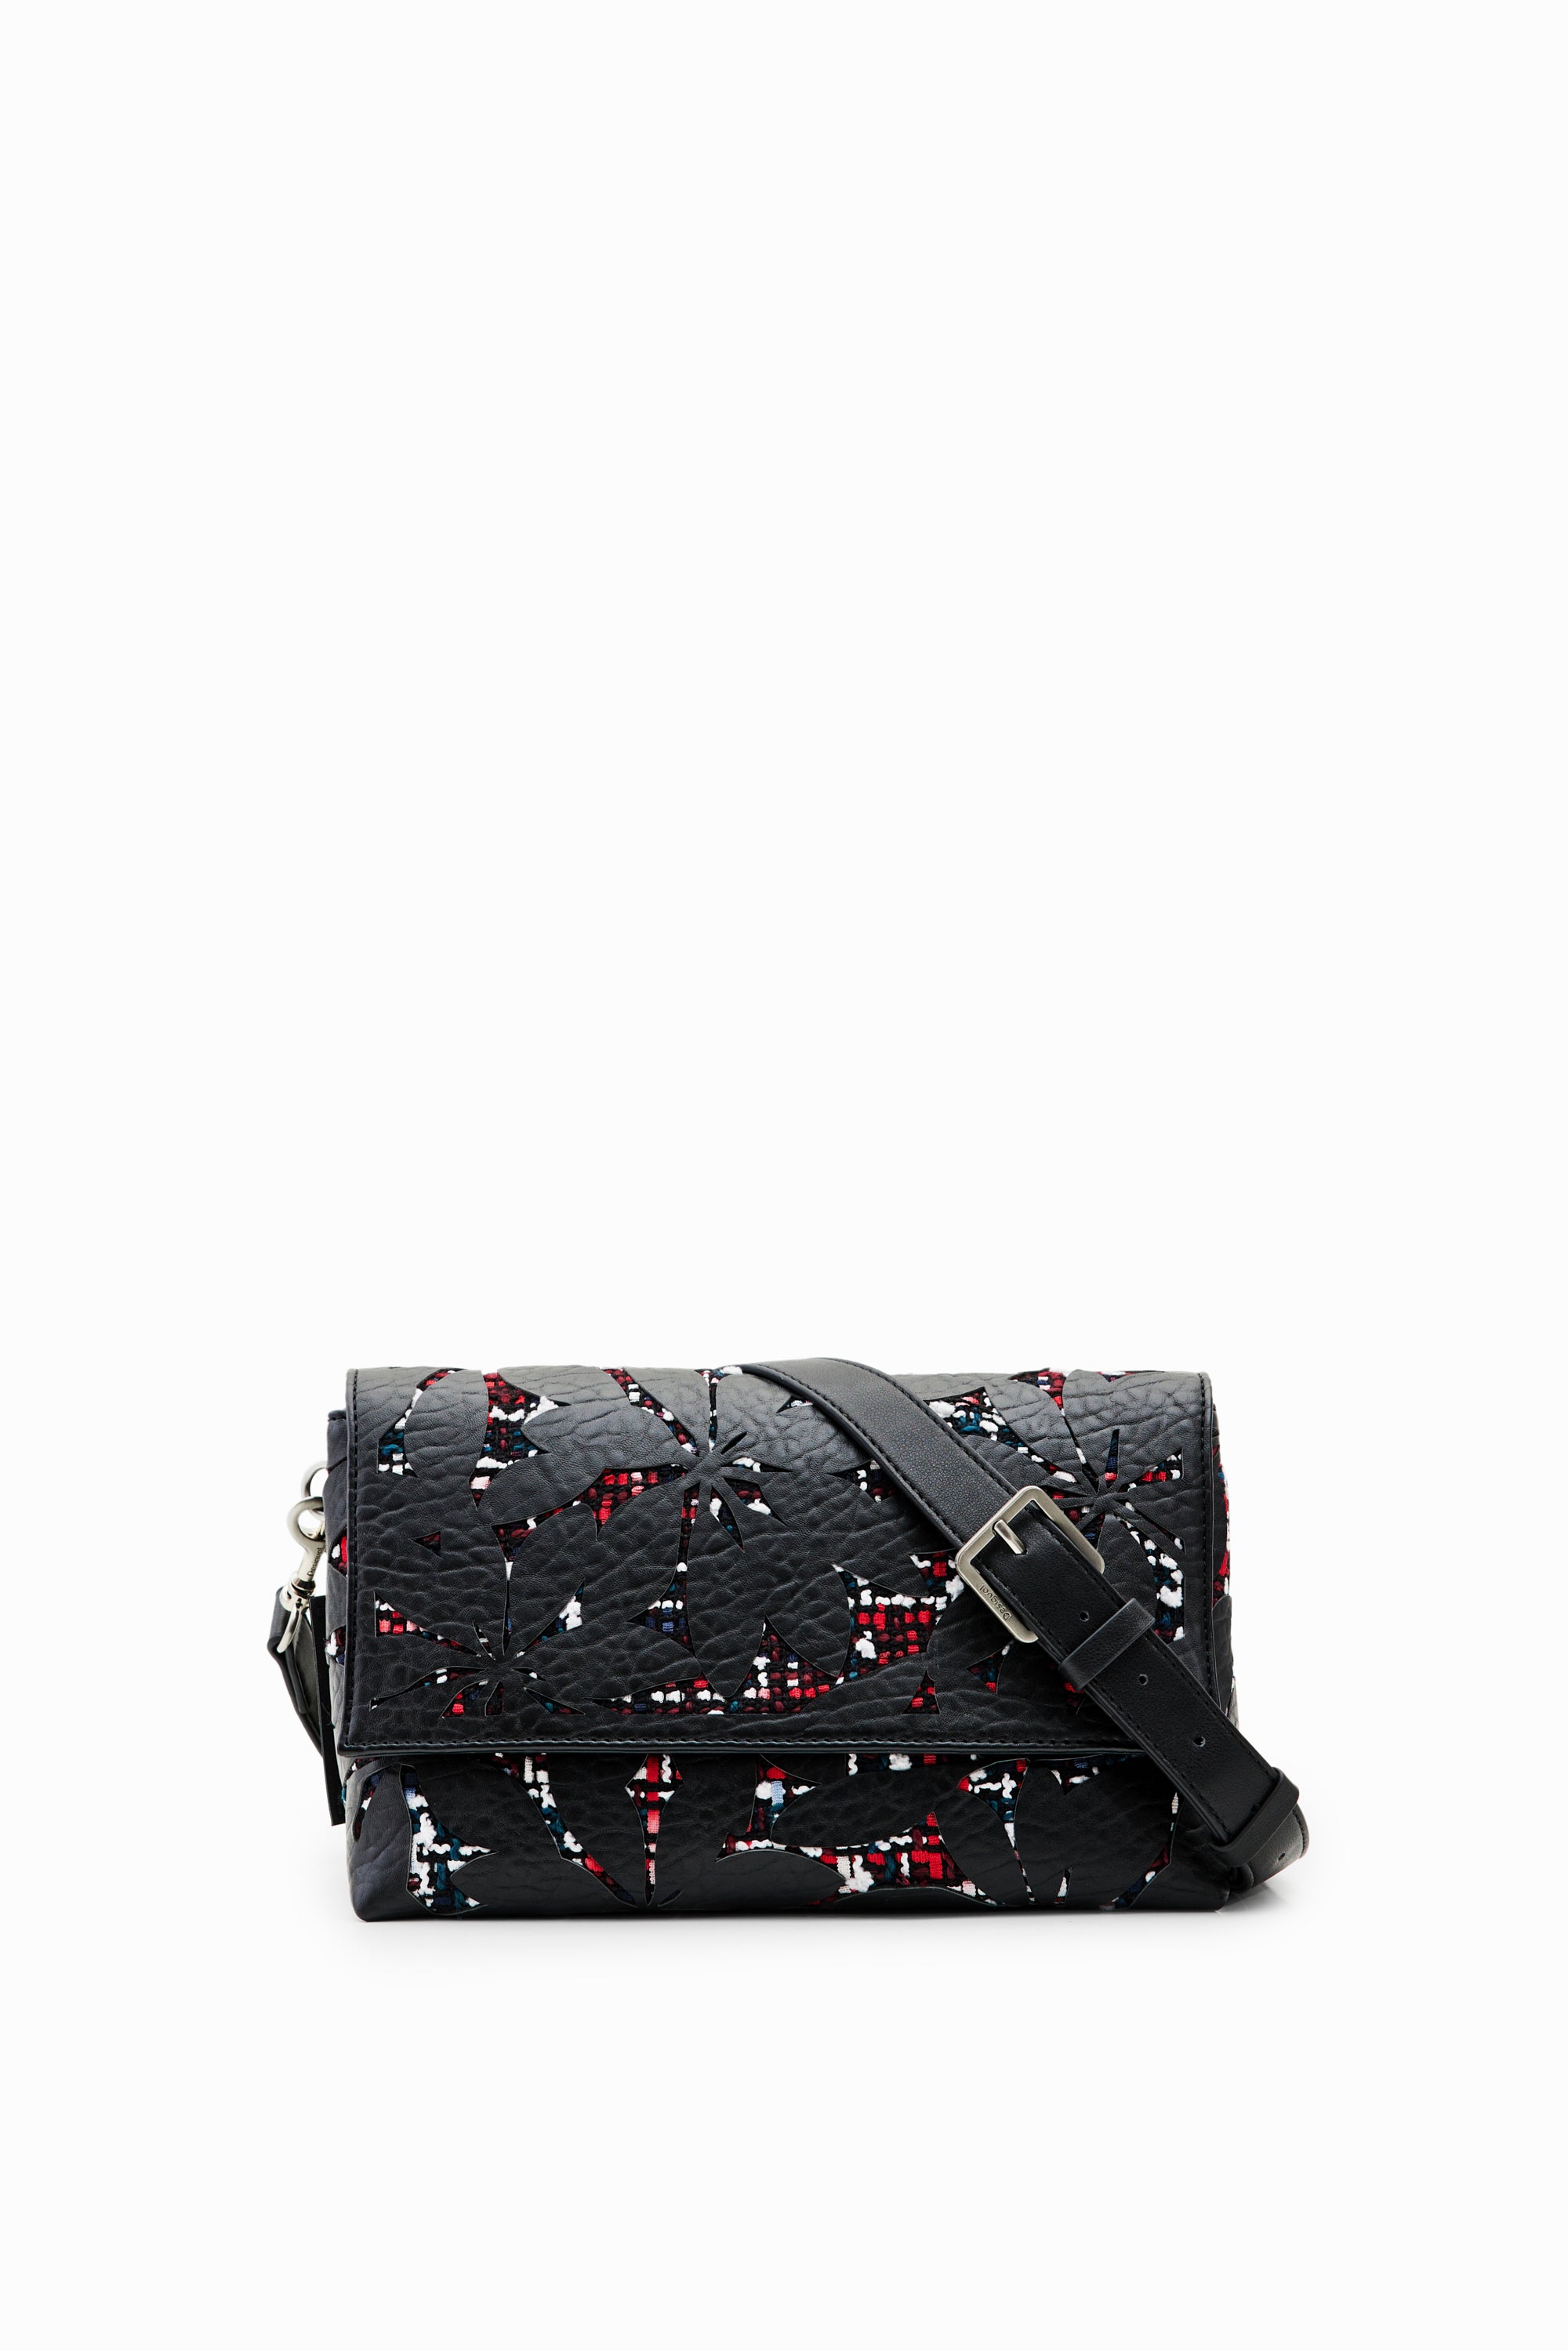 Desigual handbag 23WAXP60 Black/Red